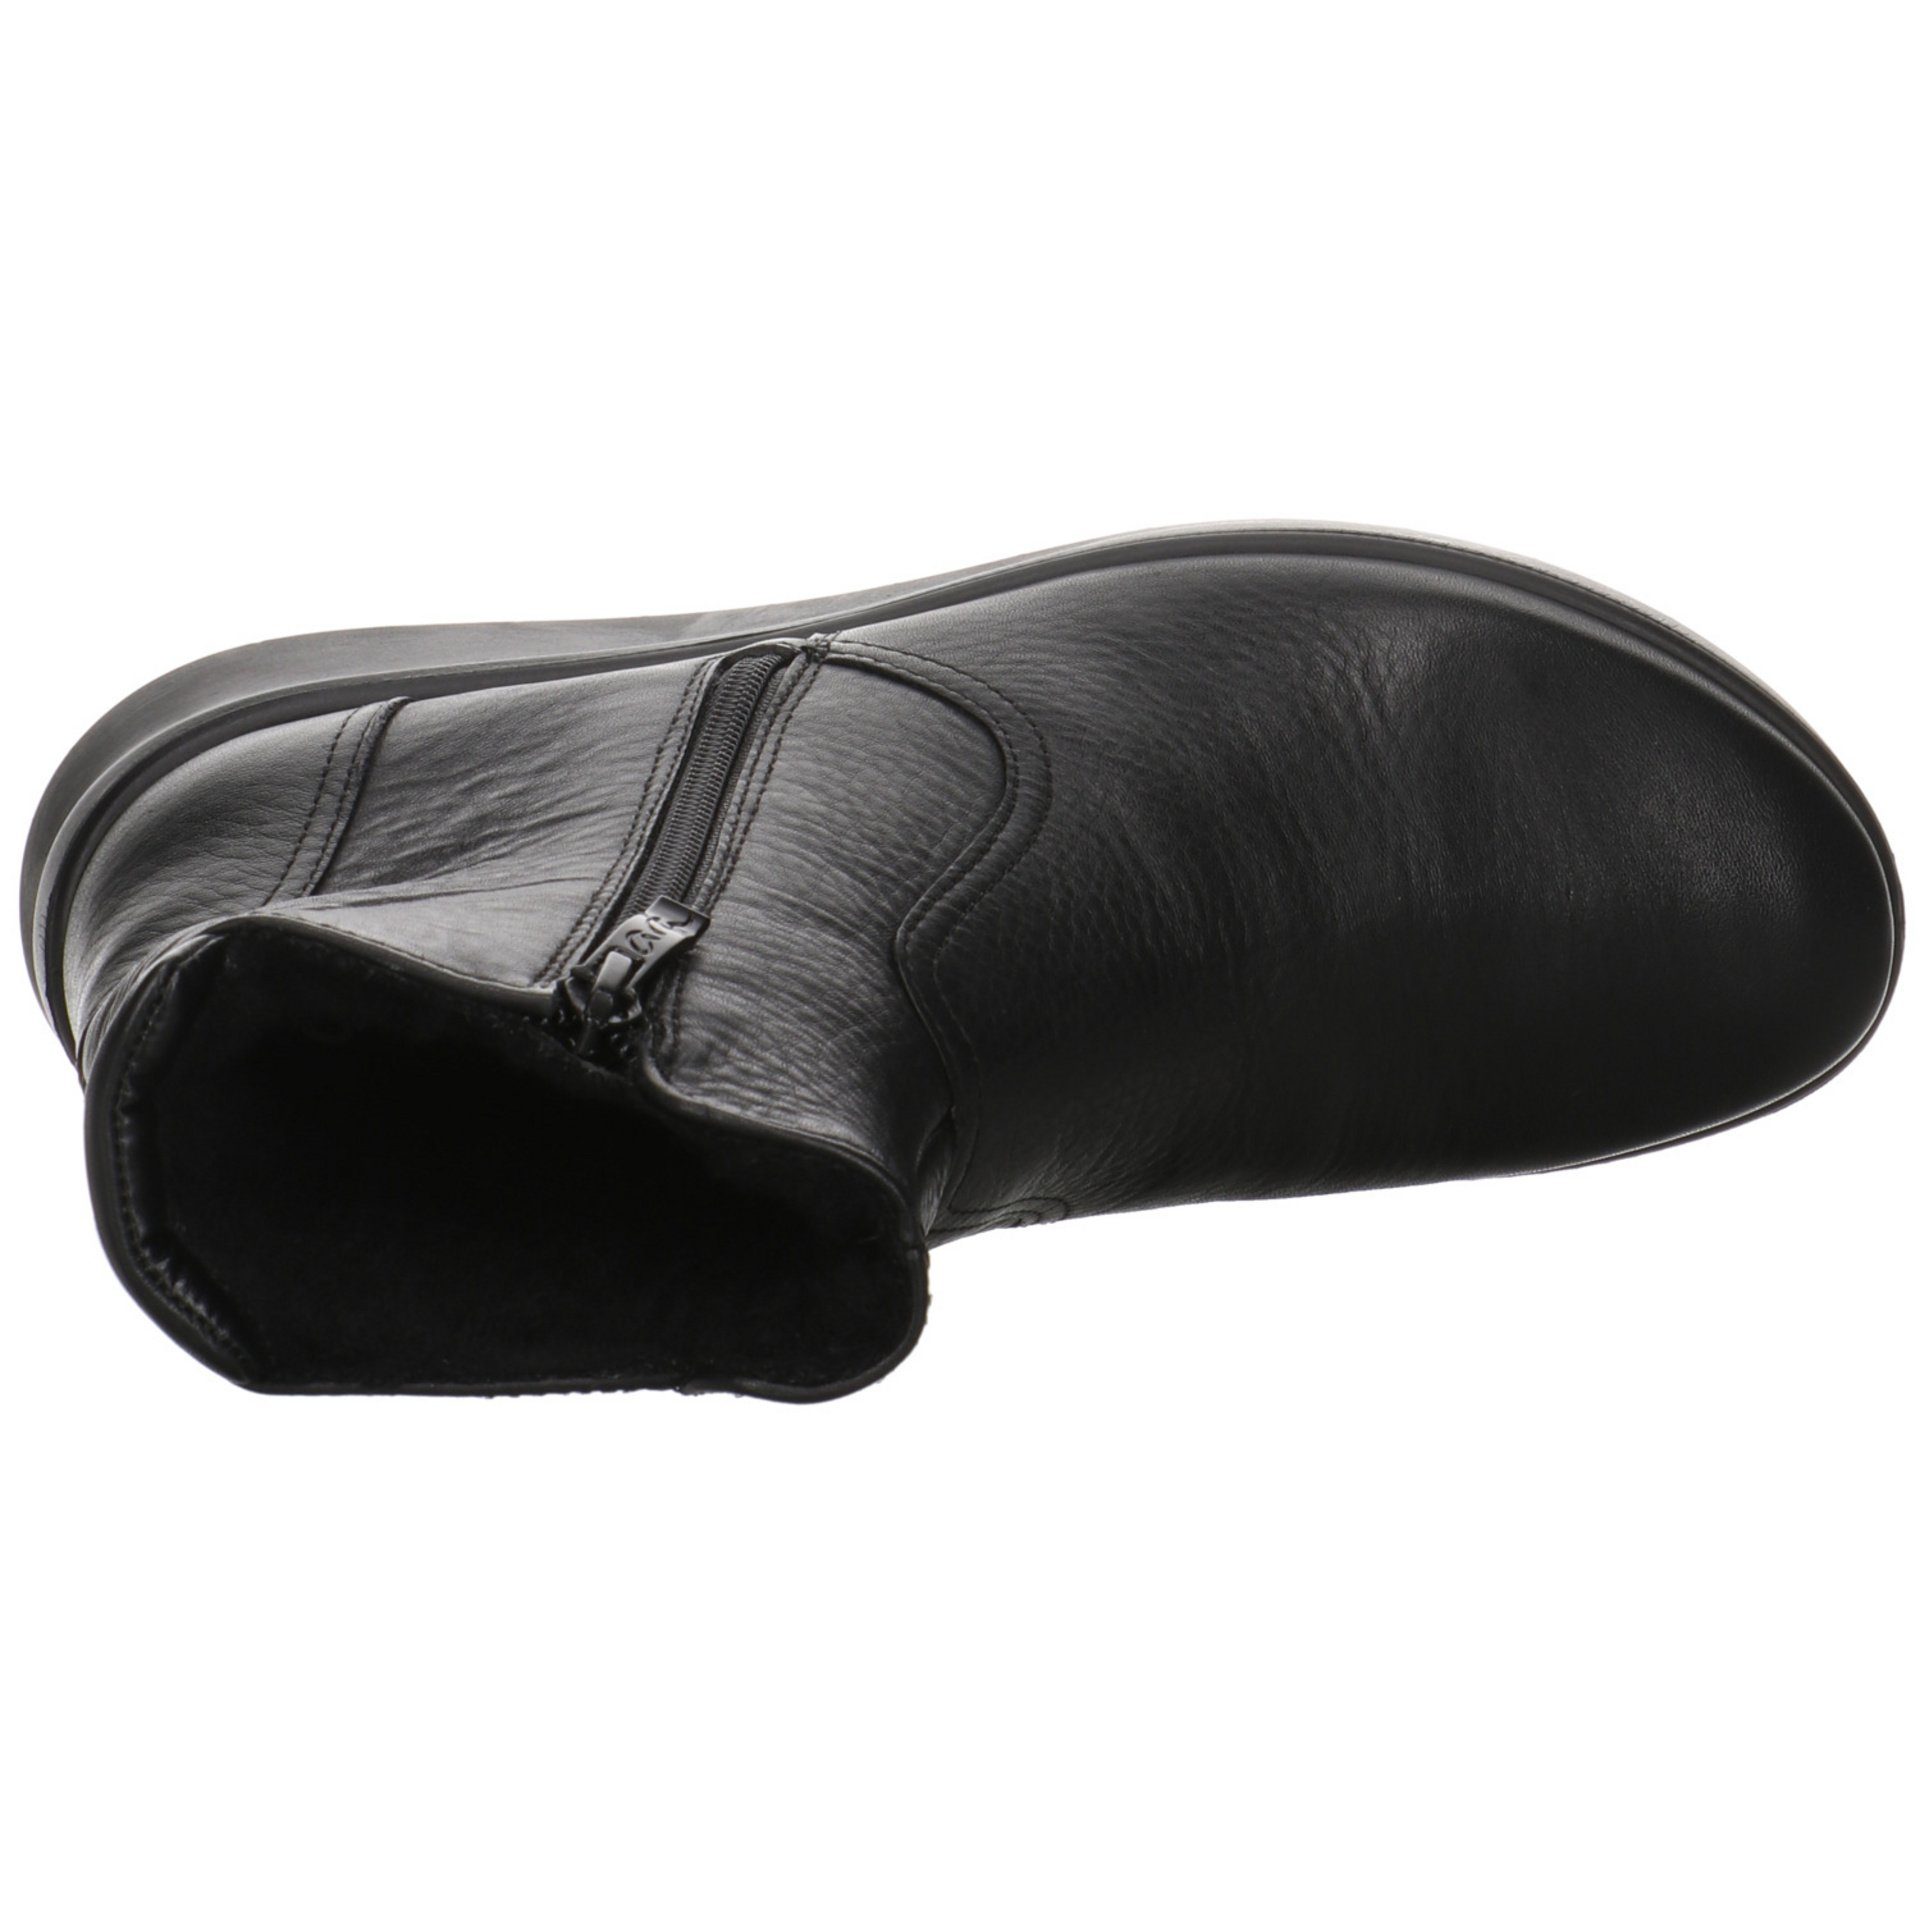 Ara Damen Stiefel 046880 Stiefelette Toronto Stiefelette schwarz Schuhe Glattleder